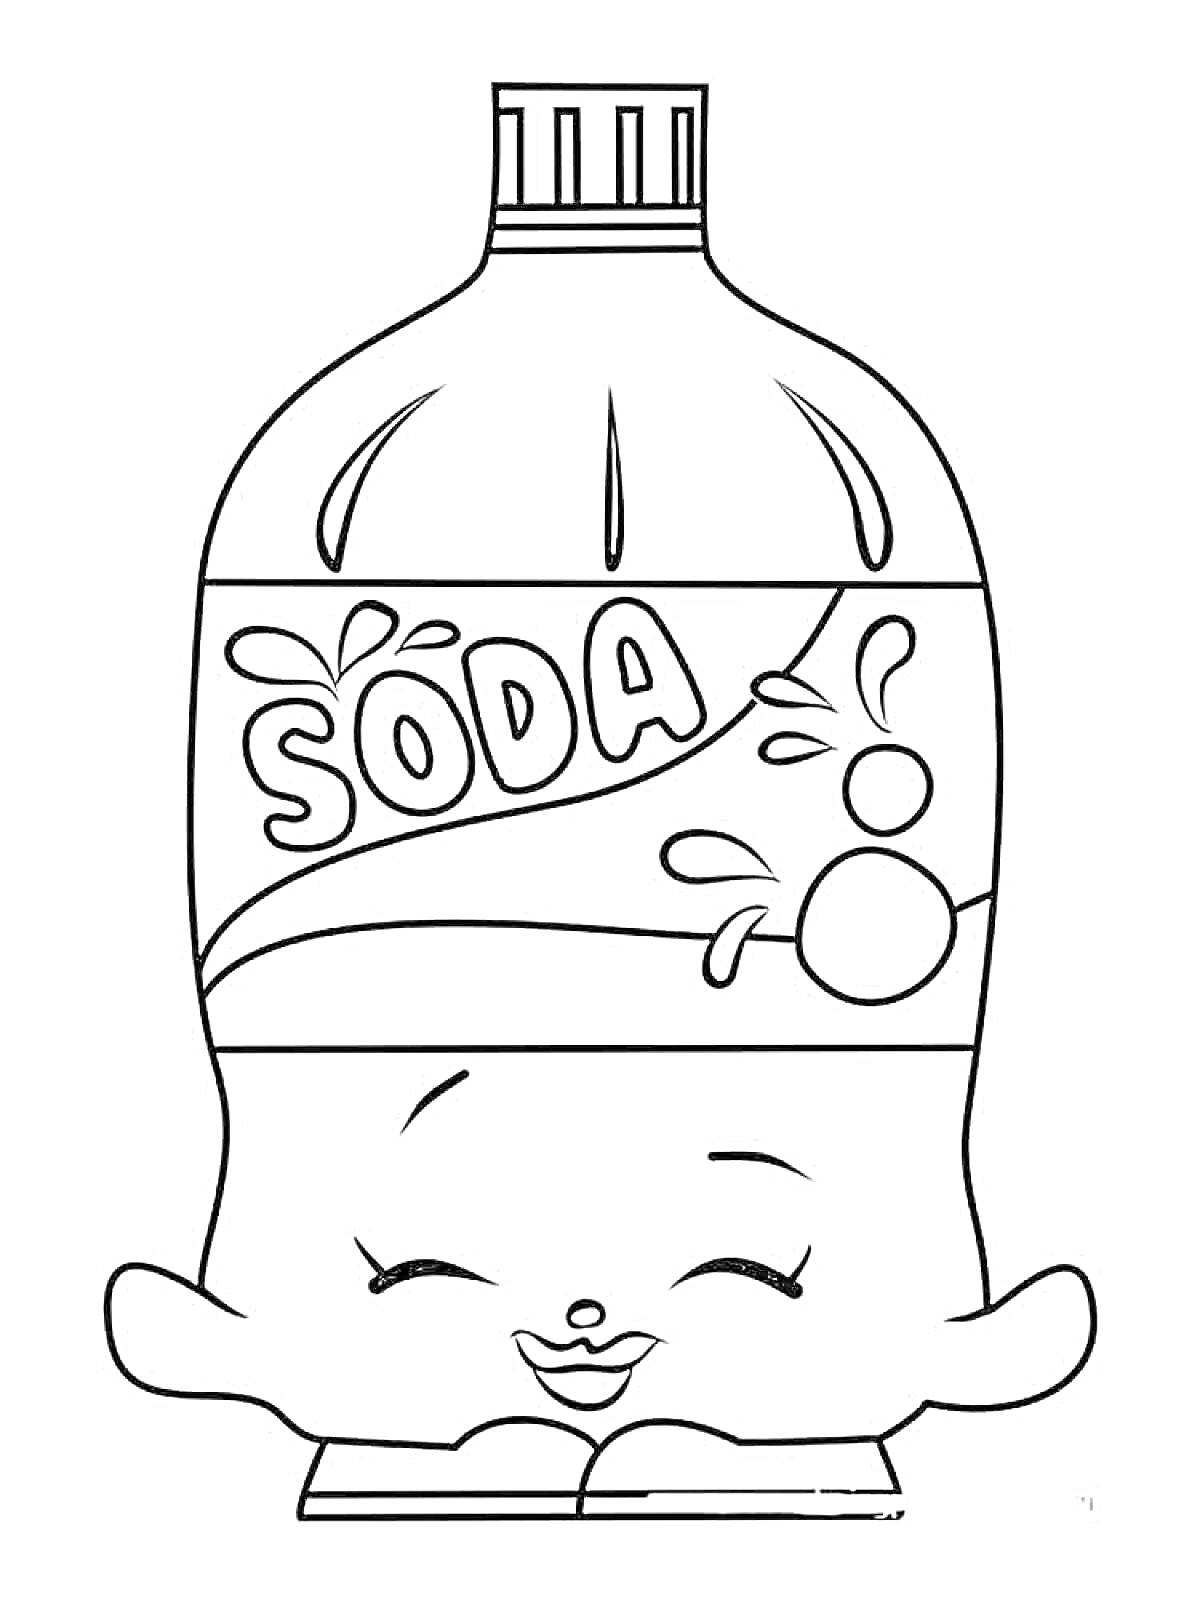 Бутылка газировки с надписью SODA и улыбающимся лицом